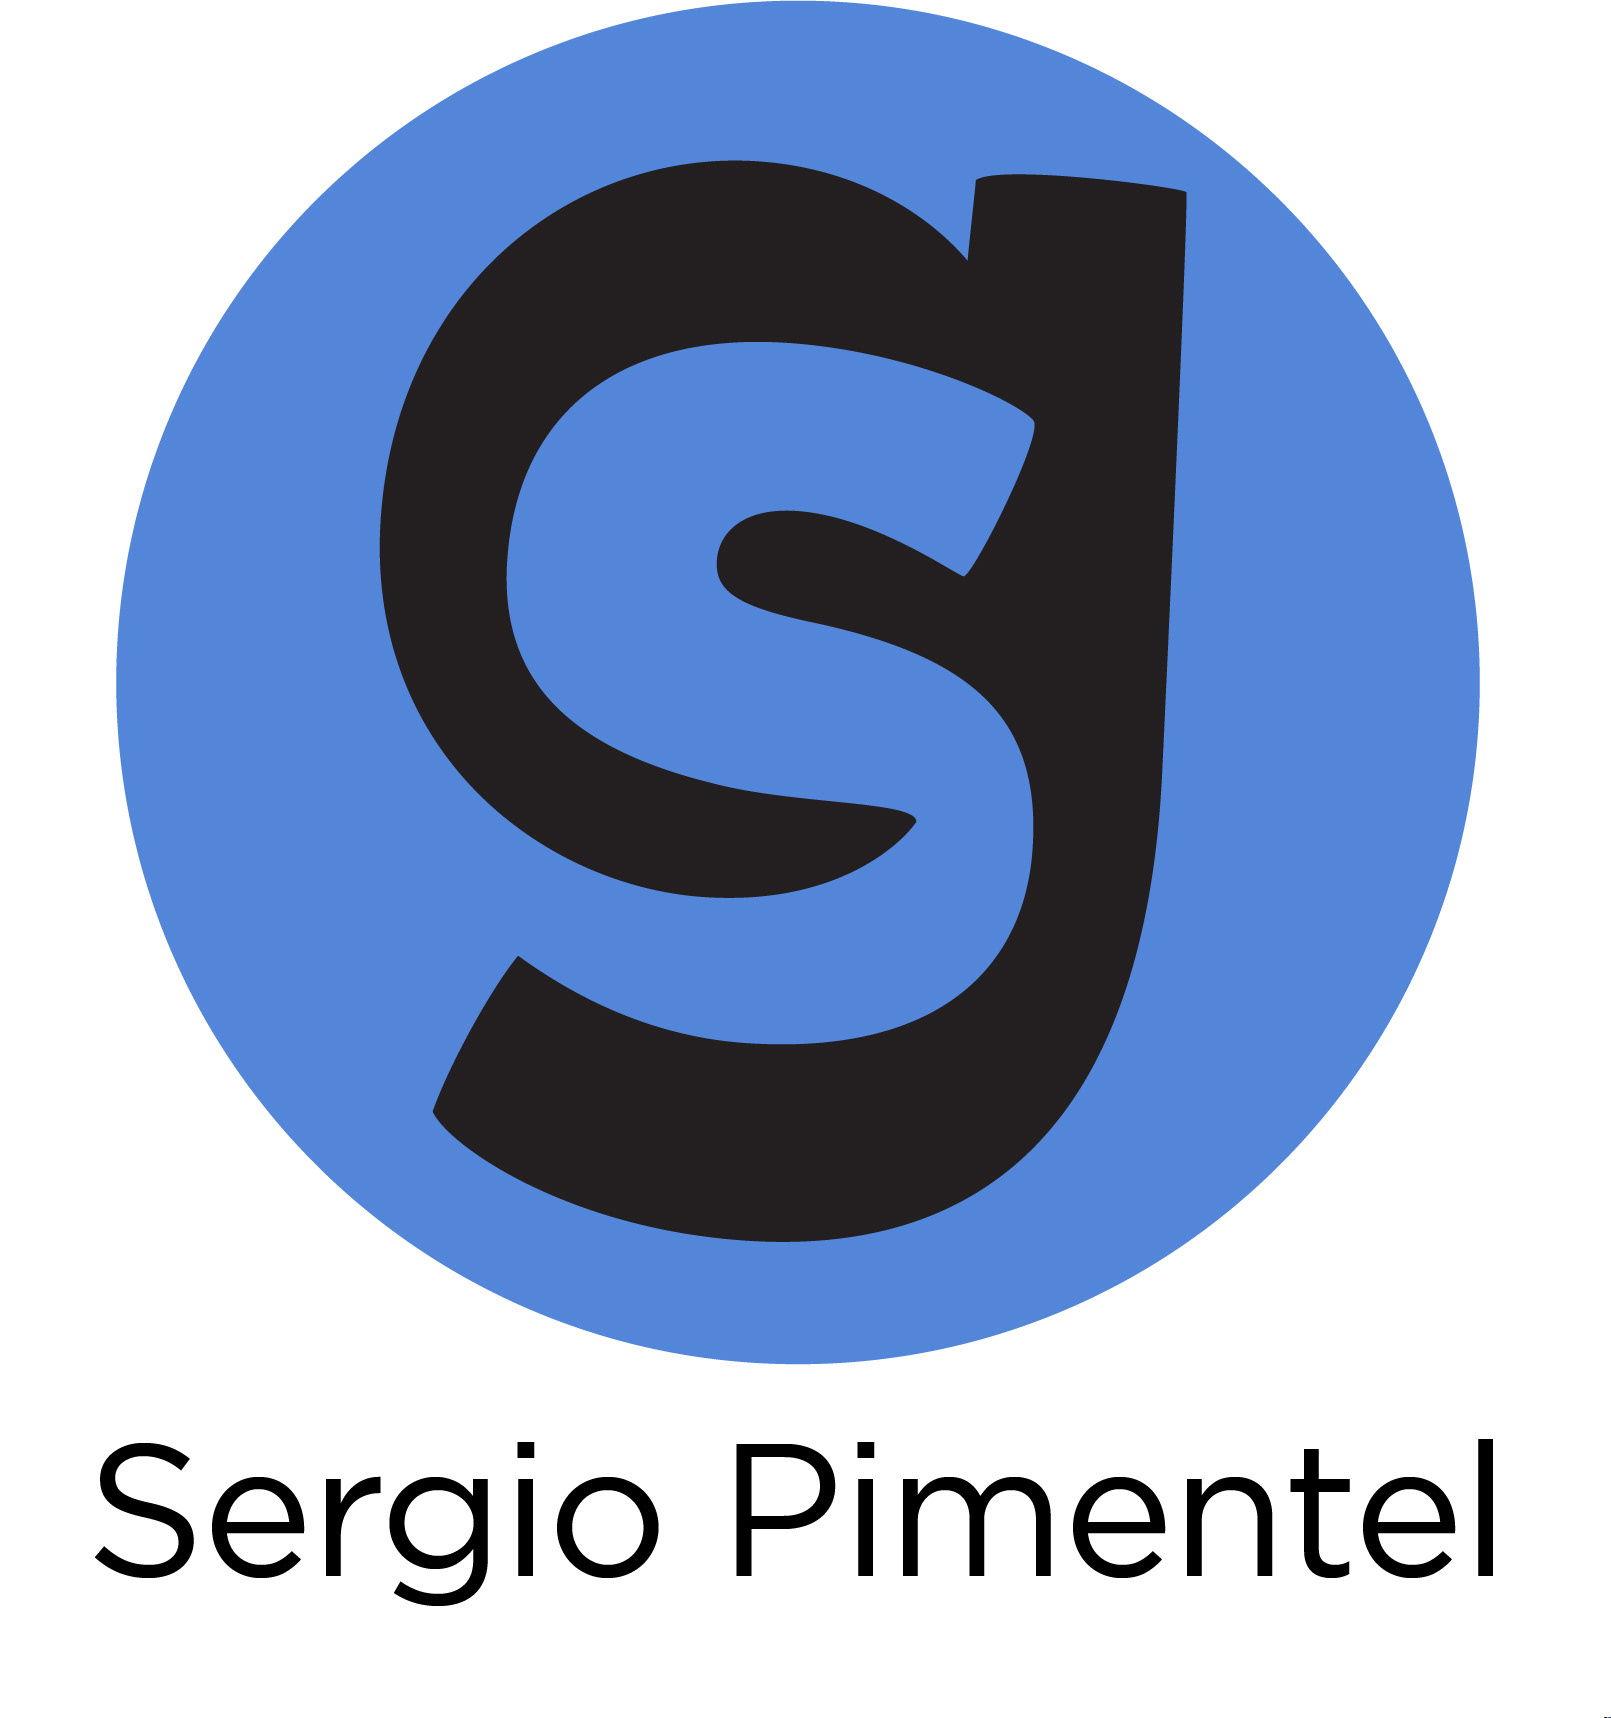 Sergio Pimentel